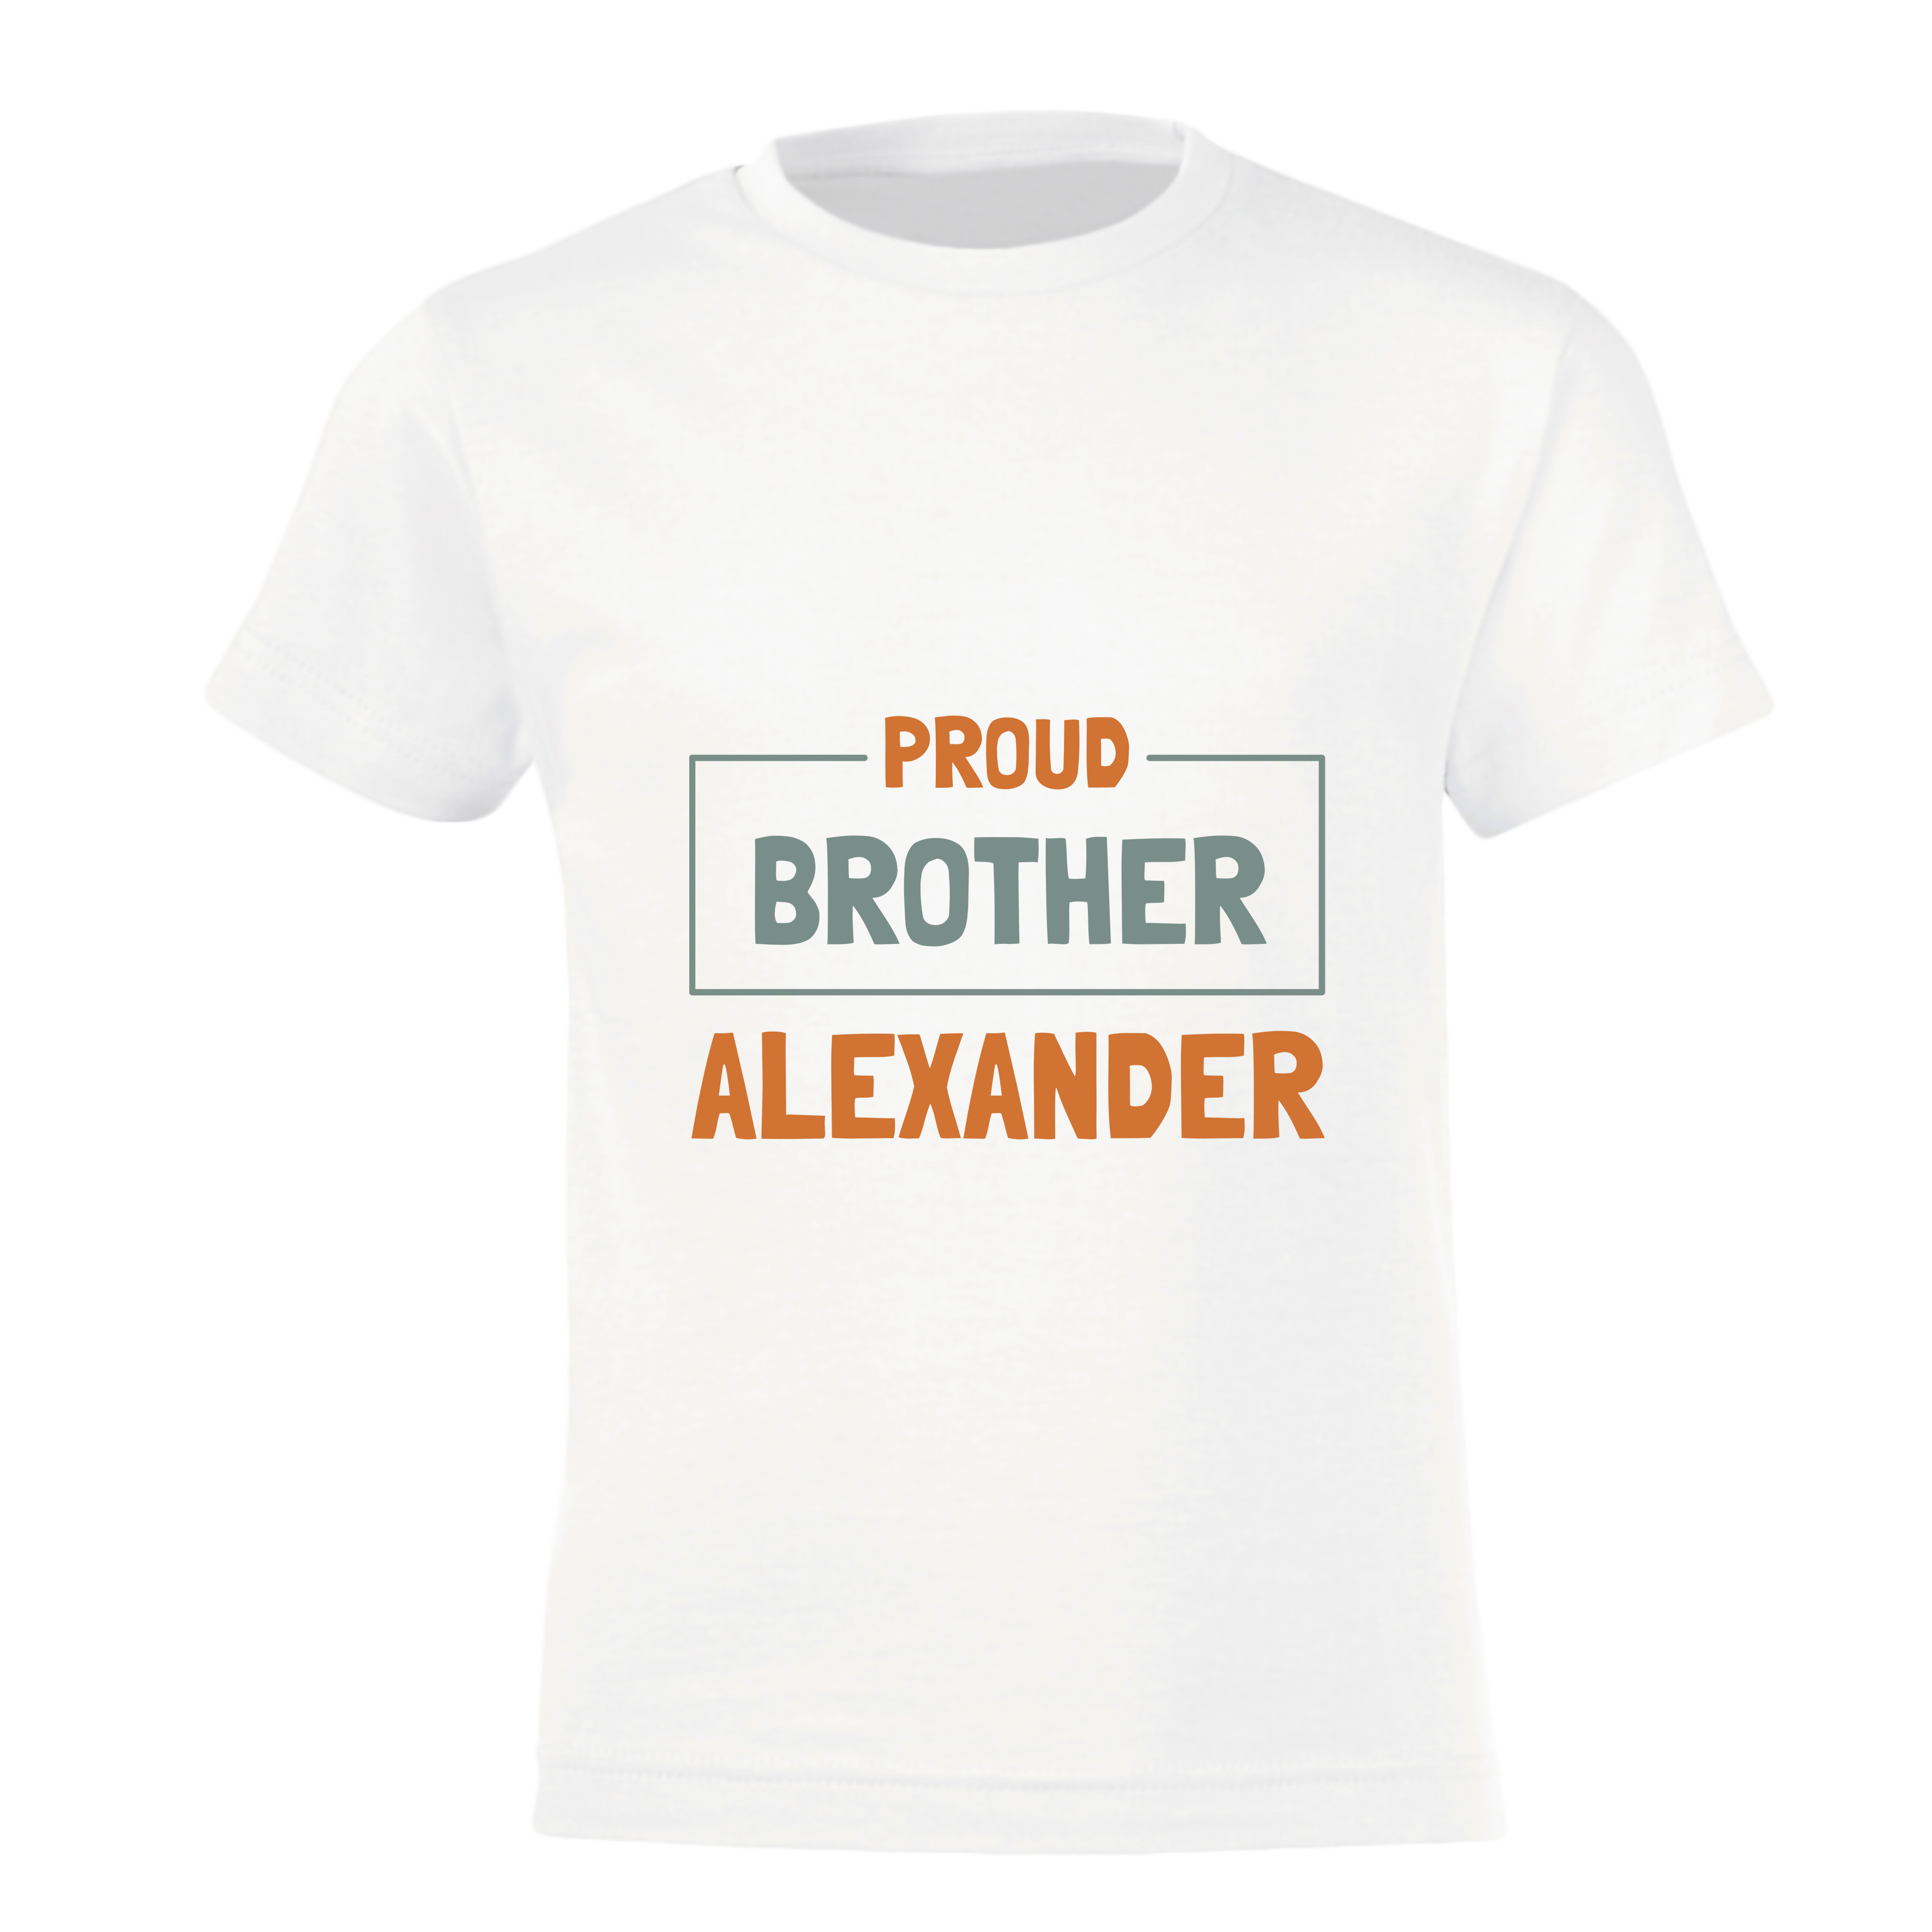 Personlig t-shirt - storebror/storasyster